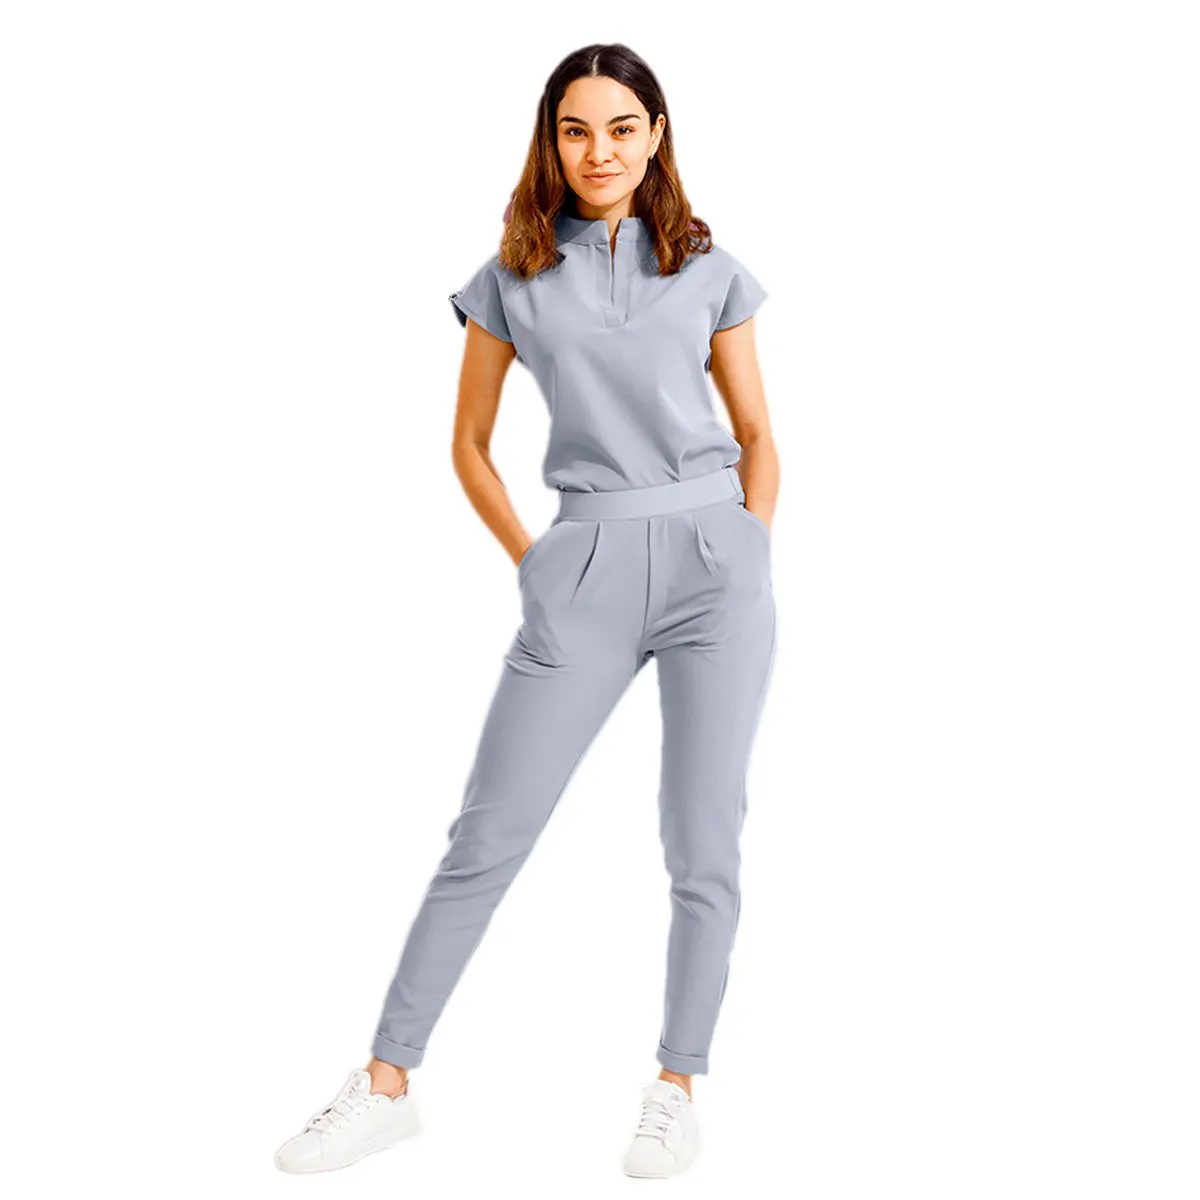 Kunden spezifische Krankenhaus Design Uniformen Frauen Jogger Set Medico Peelings Uniformen Kurz-/Langarm Medical Scrubs Uniformen